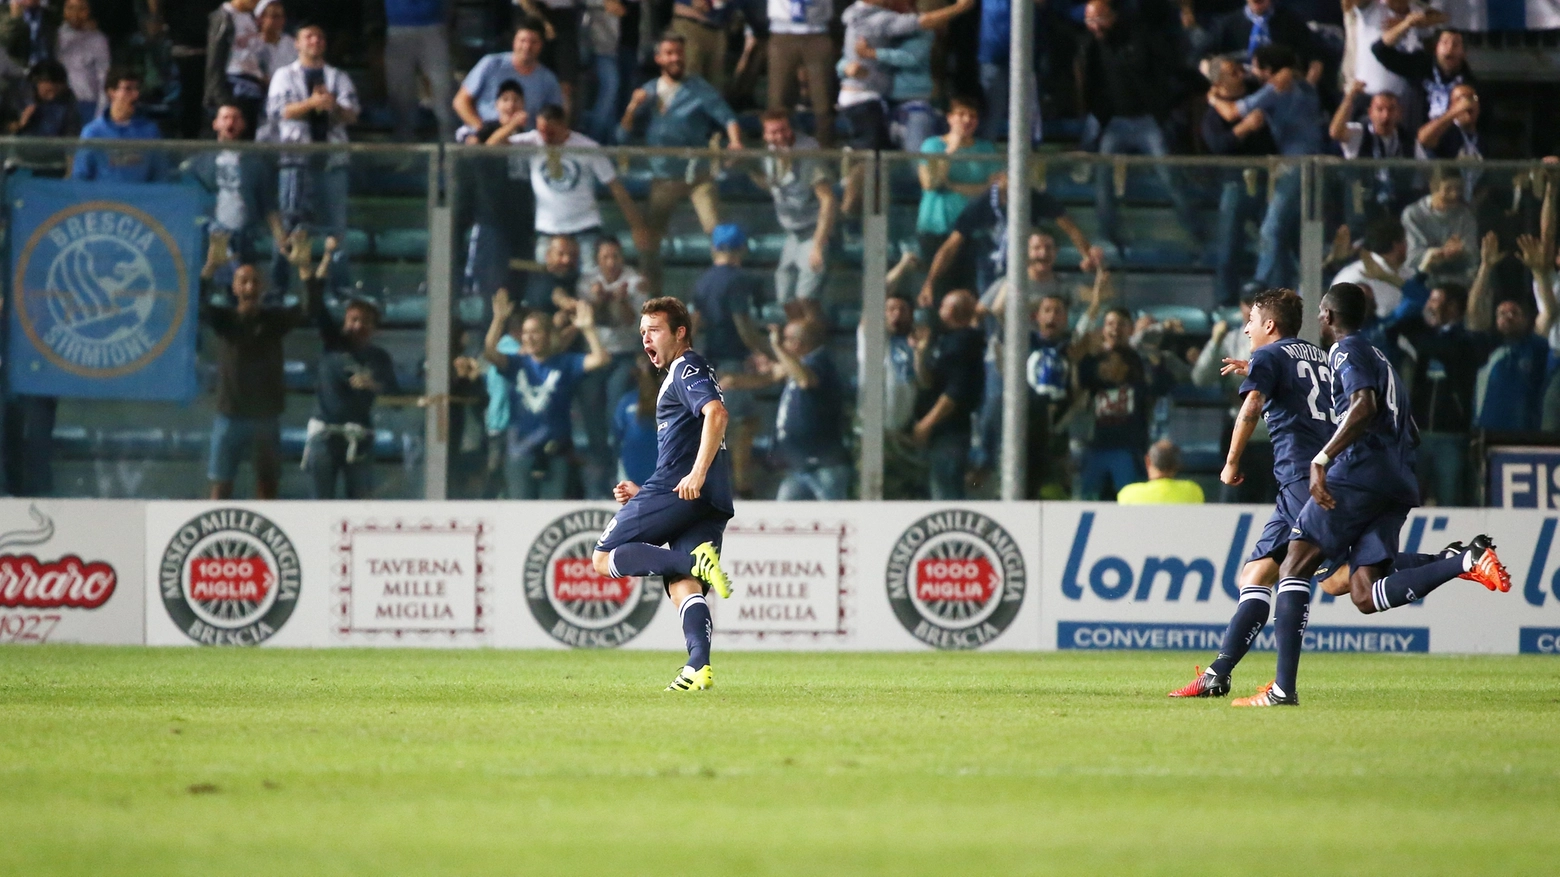 L'esultanza di Alessandro Martinelli dopo il gol (Fotolive)